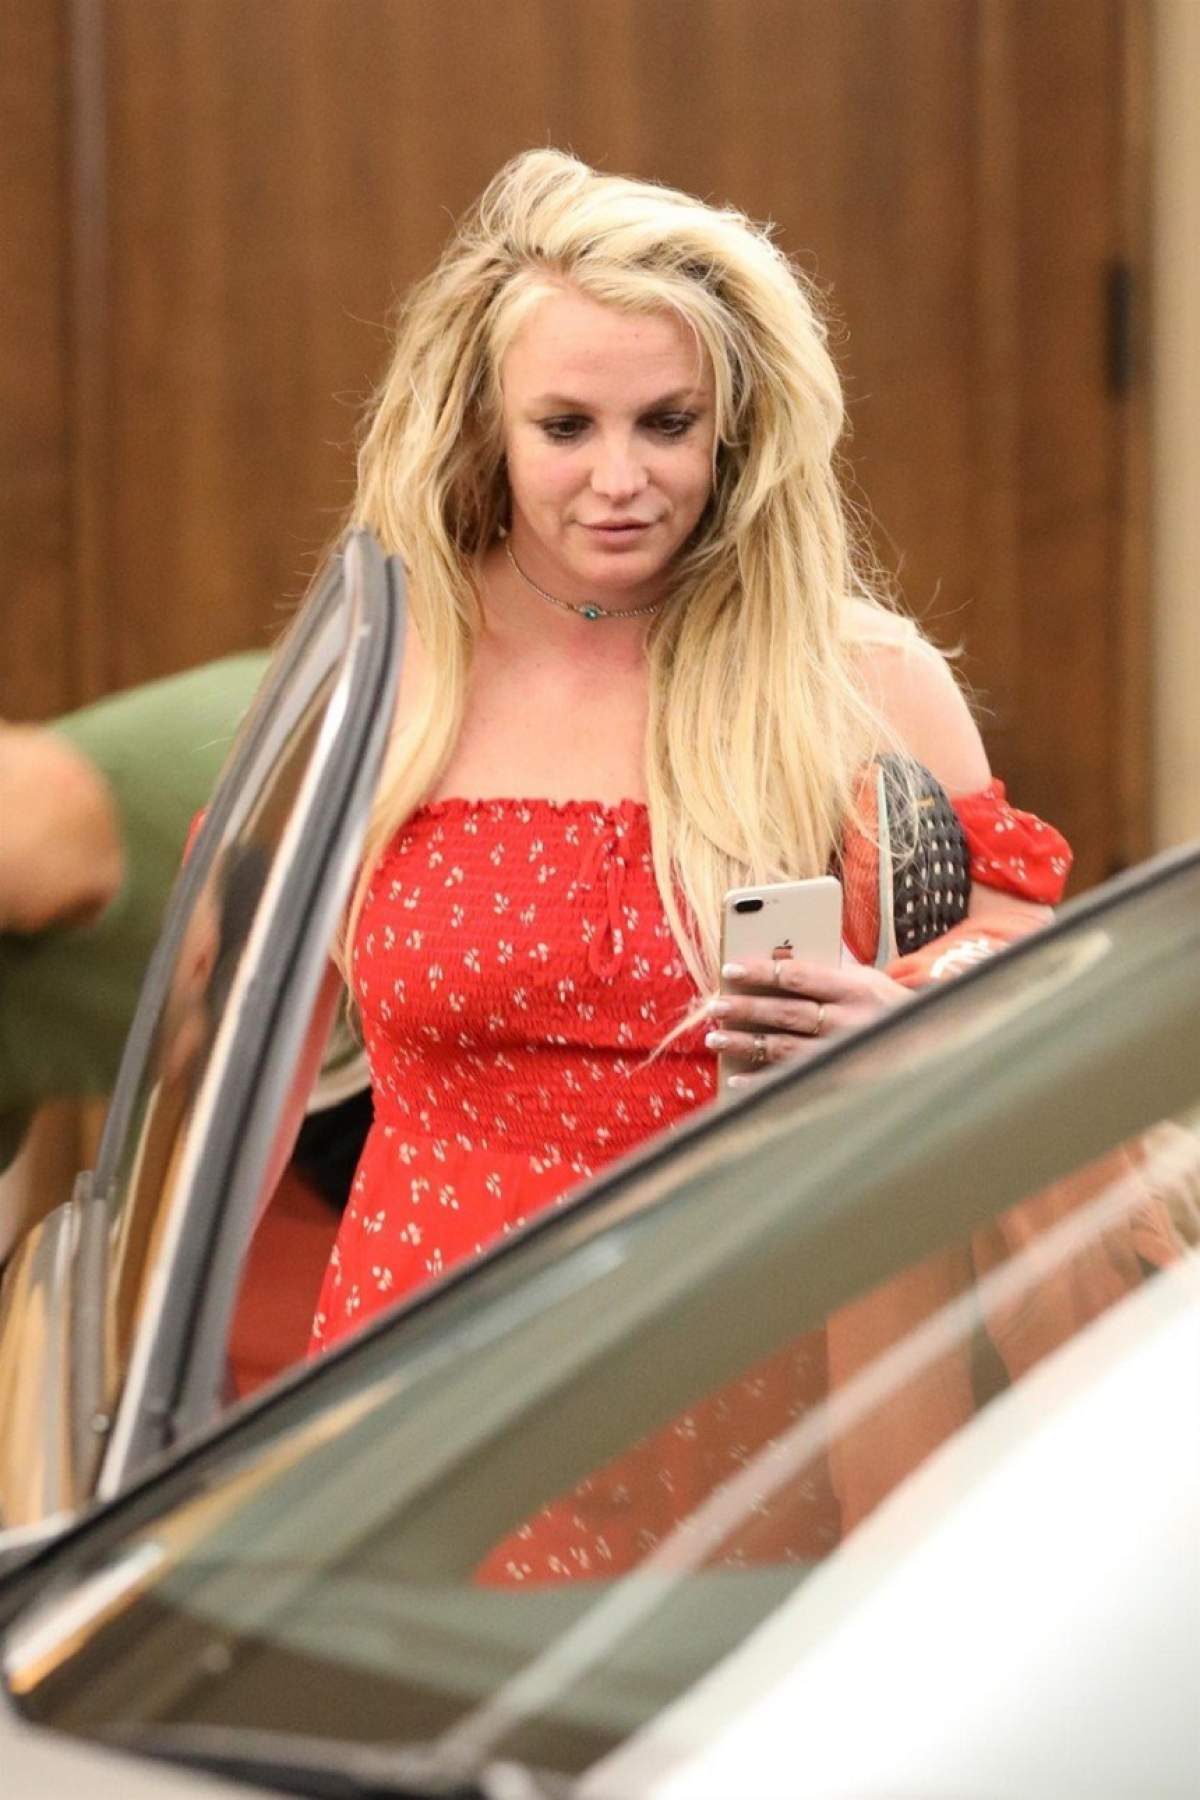 Primele imagini cu Britney Spears, de când a fost internată la psihiatrie. Artista este într-o stare deplorabilă